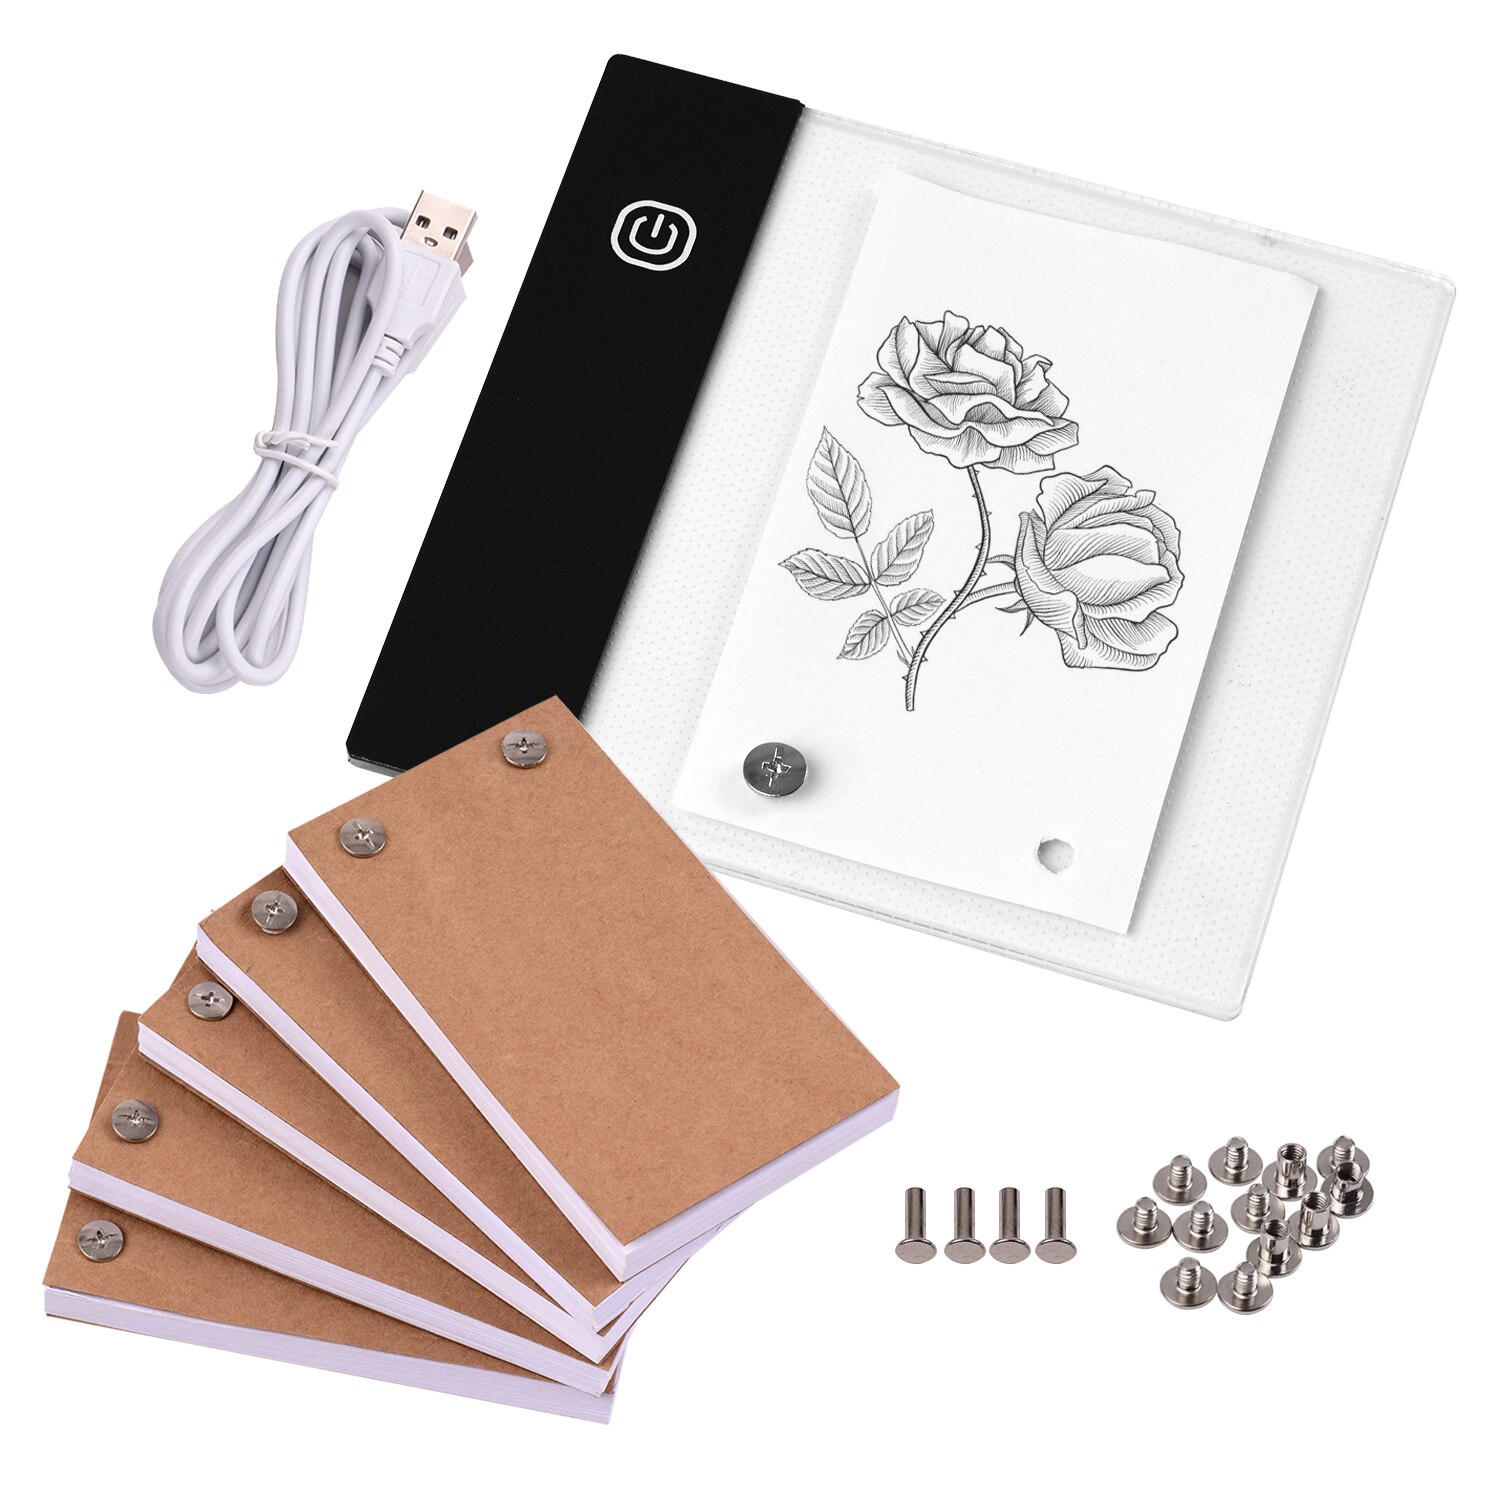 Flip Boek Kit Met Mini Licht Pad Led Lightbox Tablet Met Gat 300 Vellen Flipbook Papier Voor Tekening Tracing schetsen